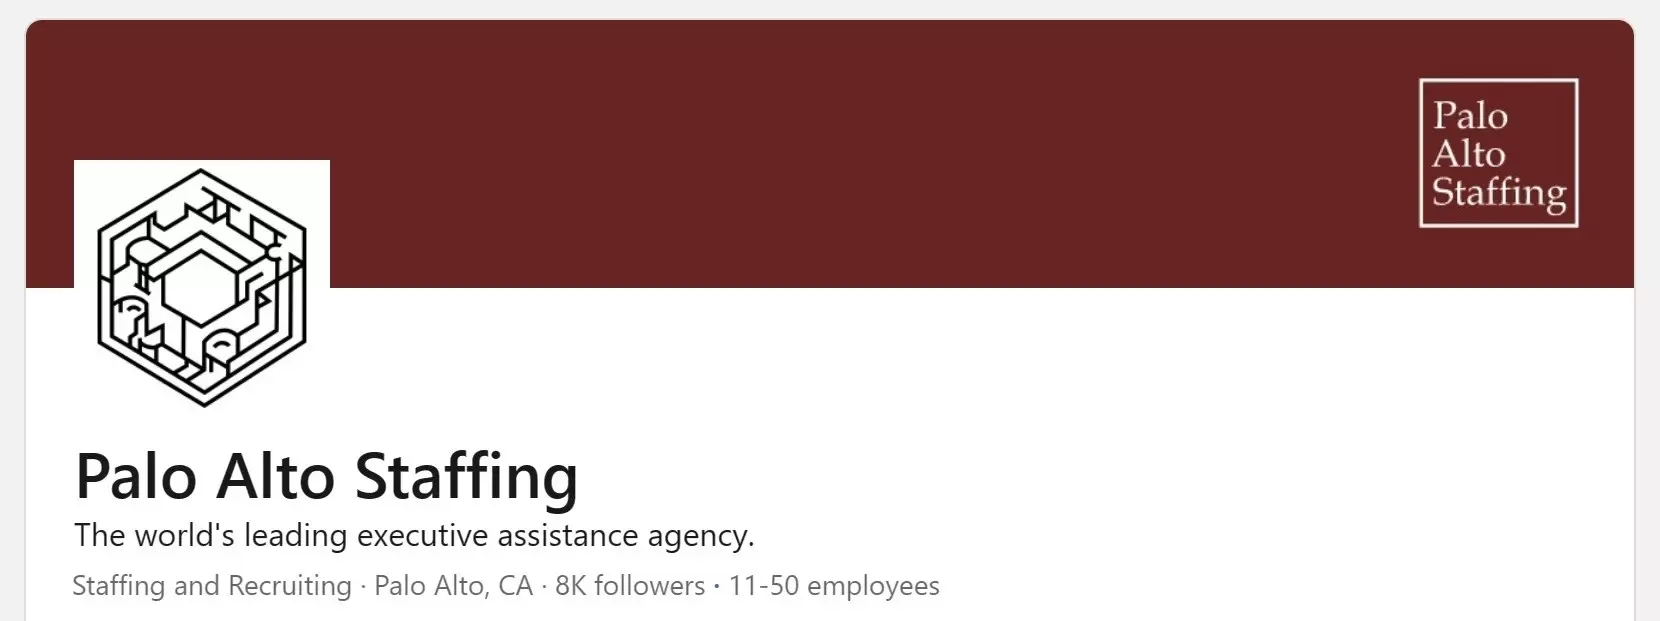 Palo Alto Staffing on LinkedIn